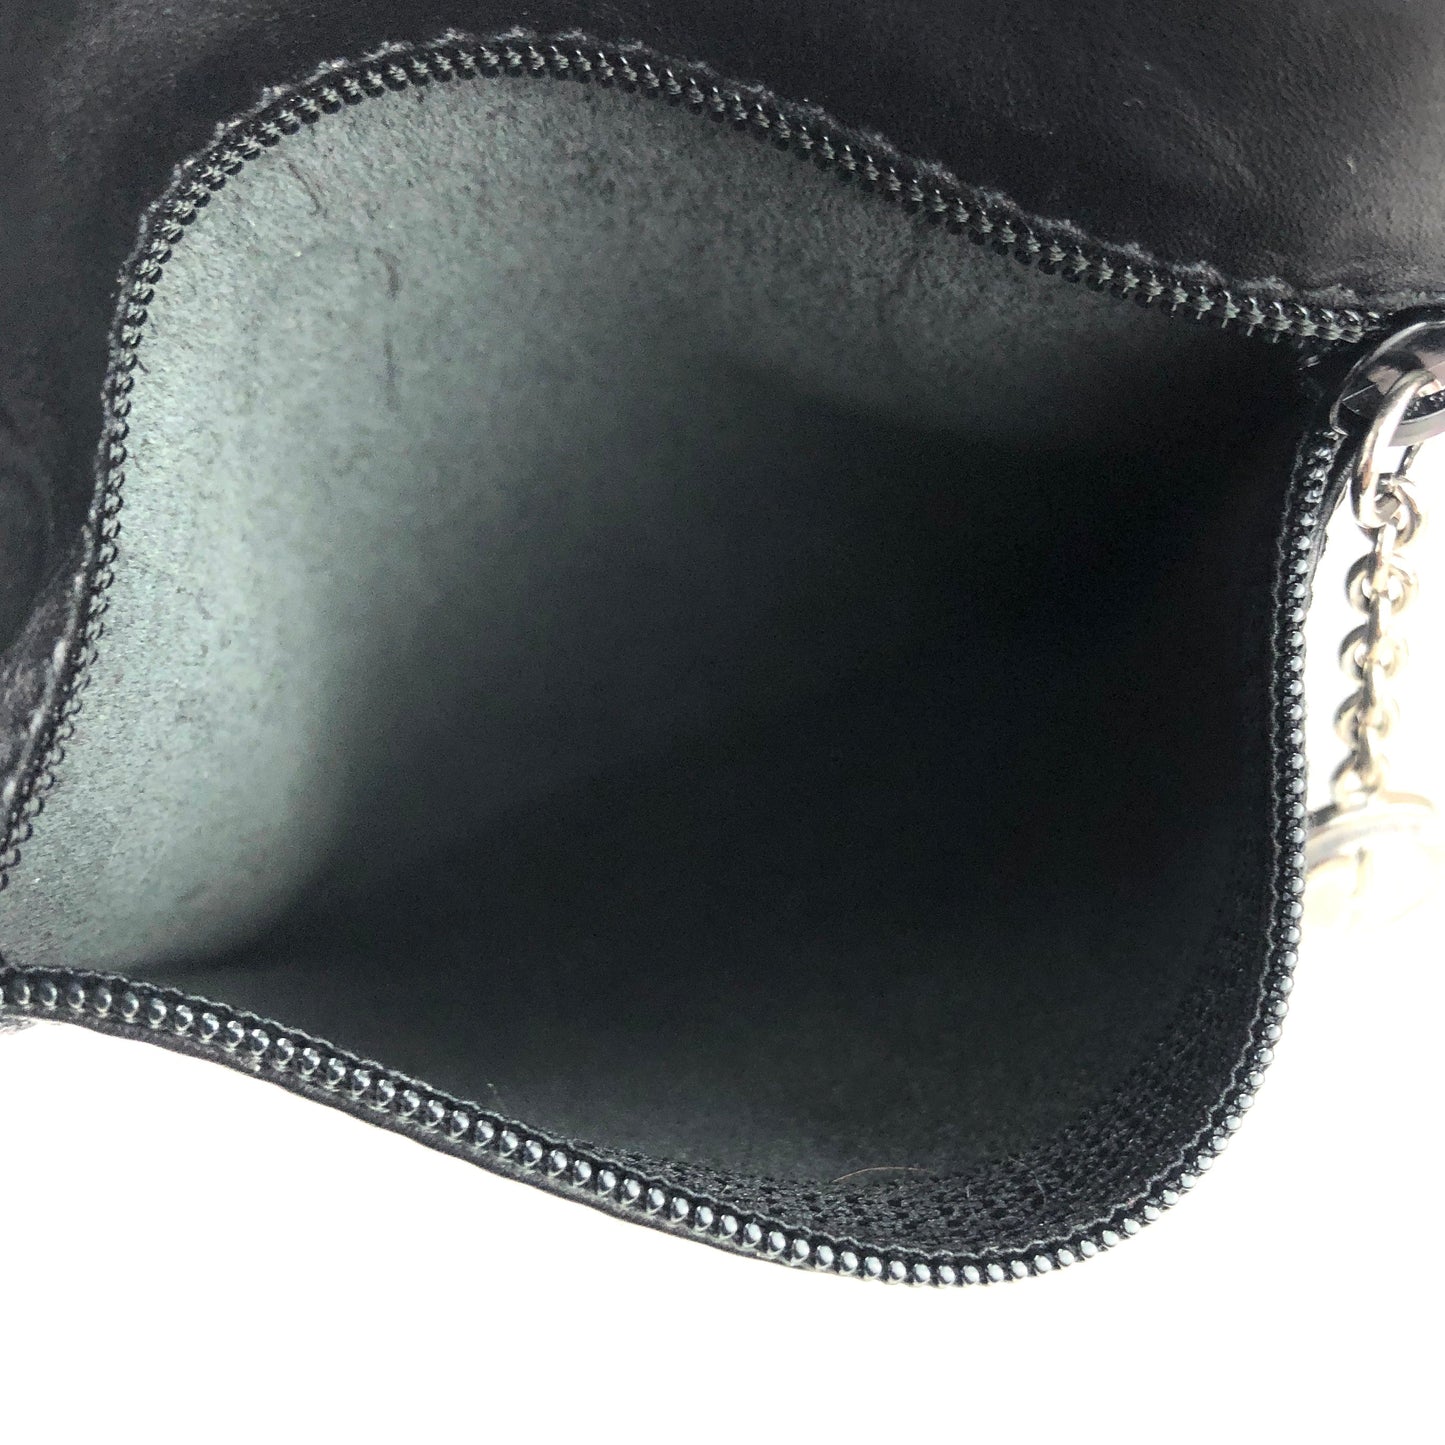 GUCCI Logo Leather Drawstring Shoulder bag Handbag Black Vintage Old Gucci pih6he